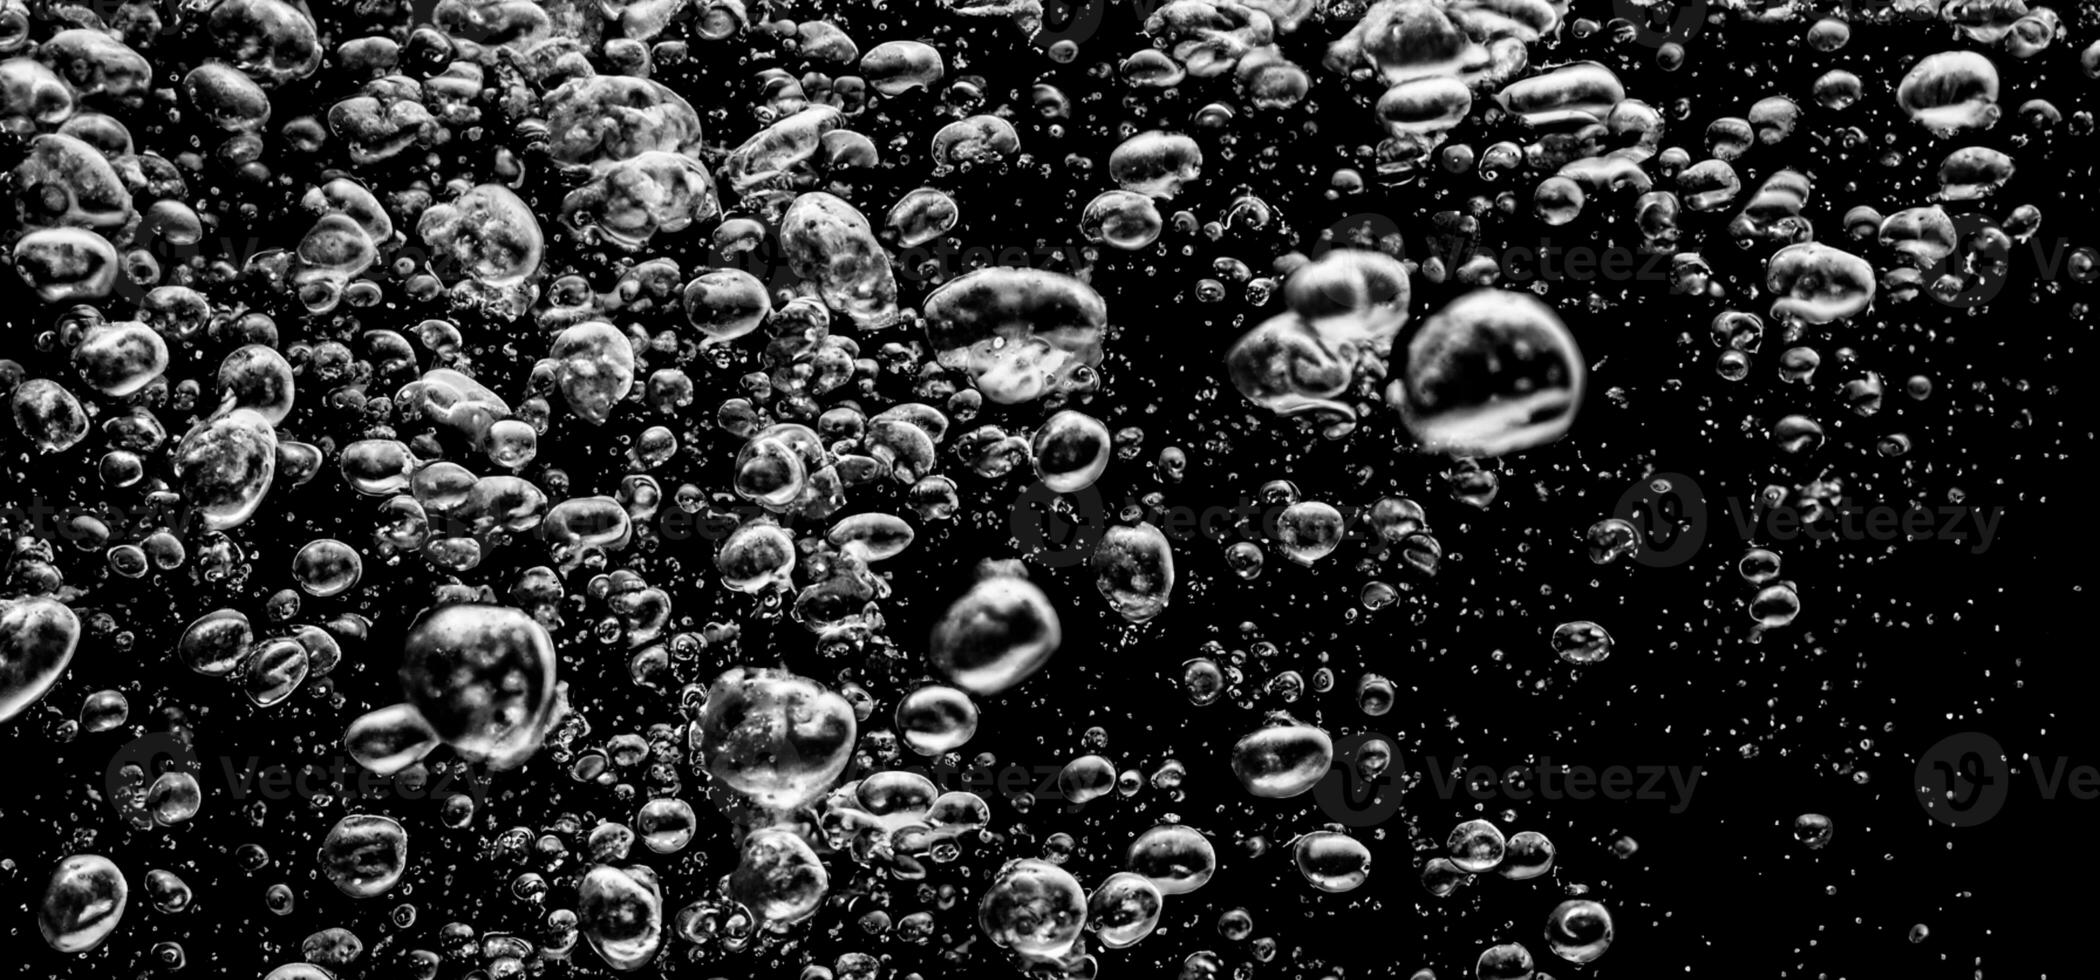 refrigerante água bolhas espirrando embaixo da agua contra Preto fundo. foto